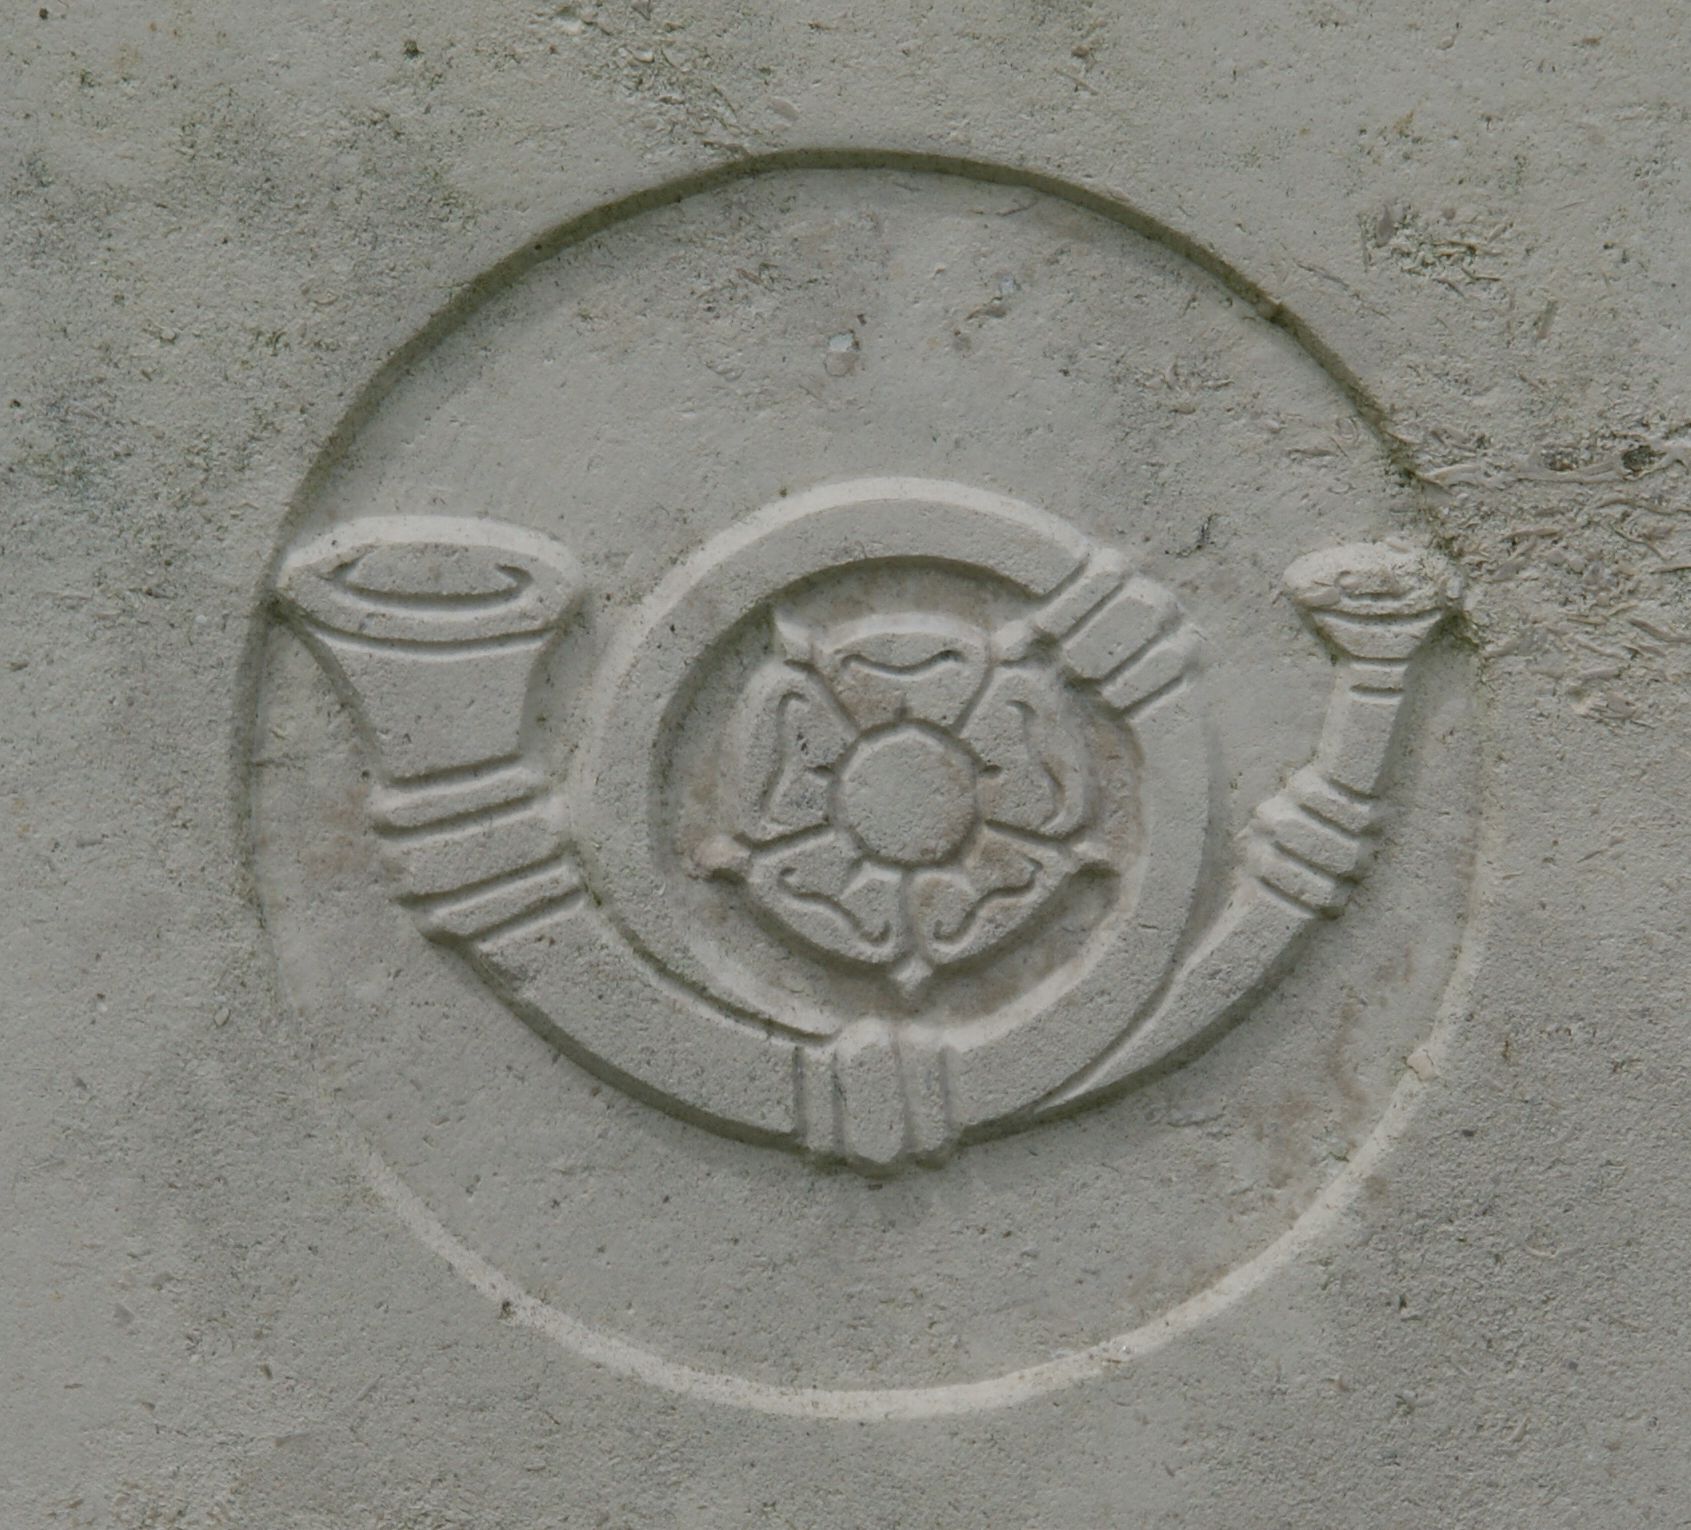 Wiltshire Regiment badge